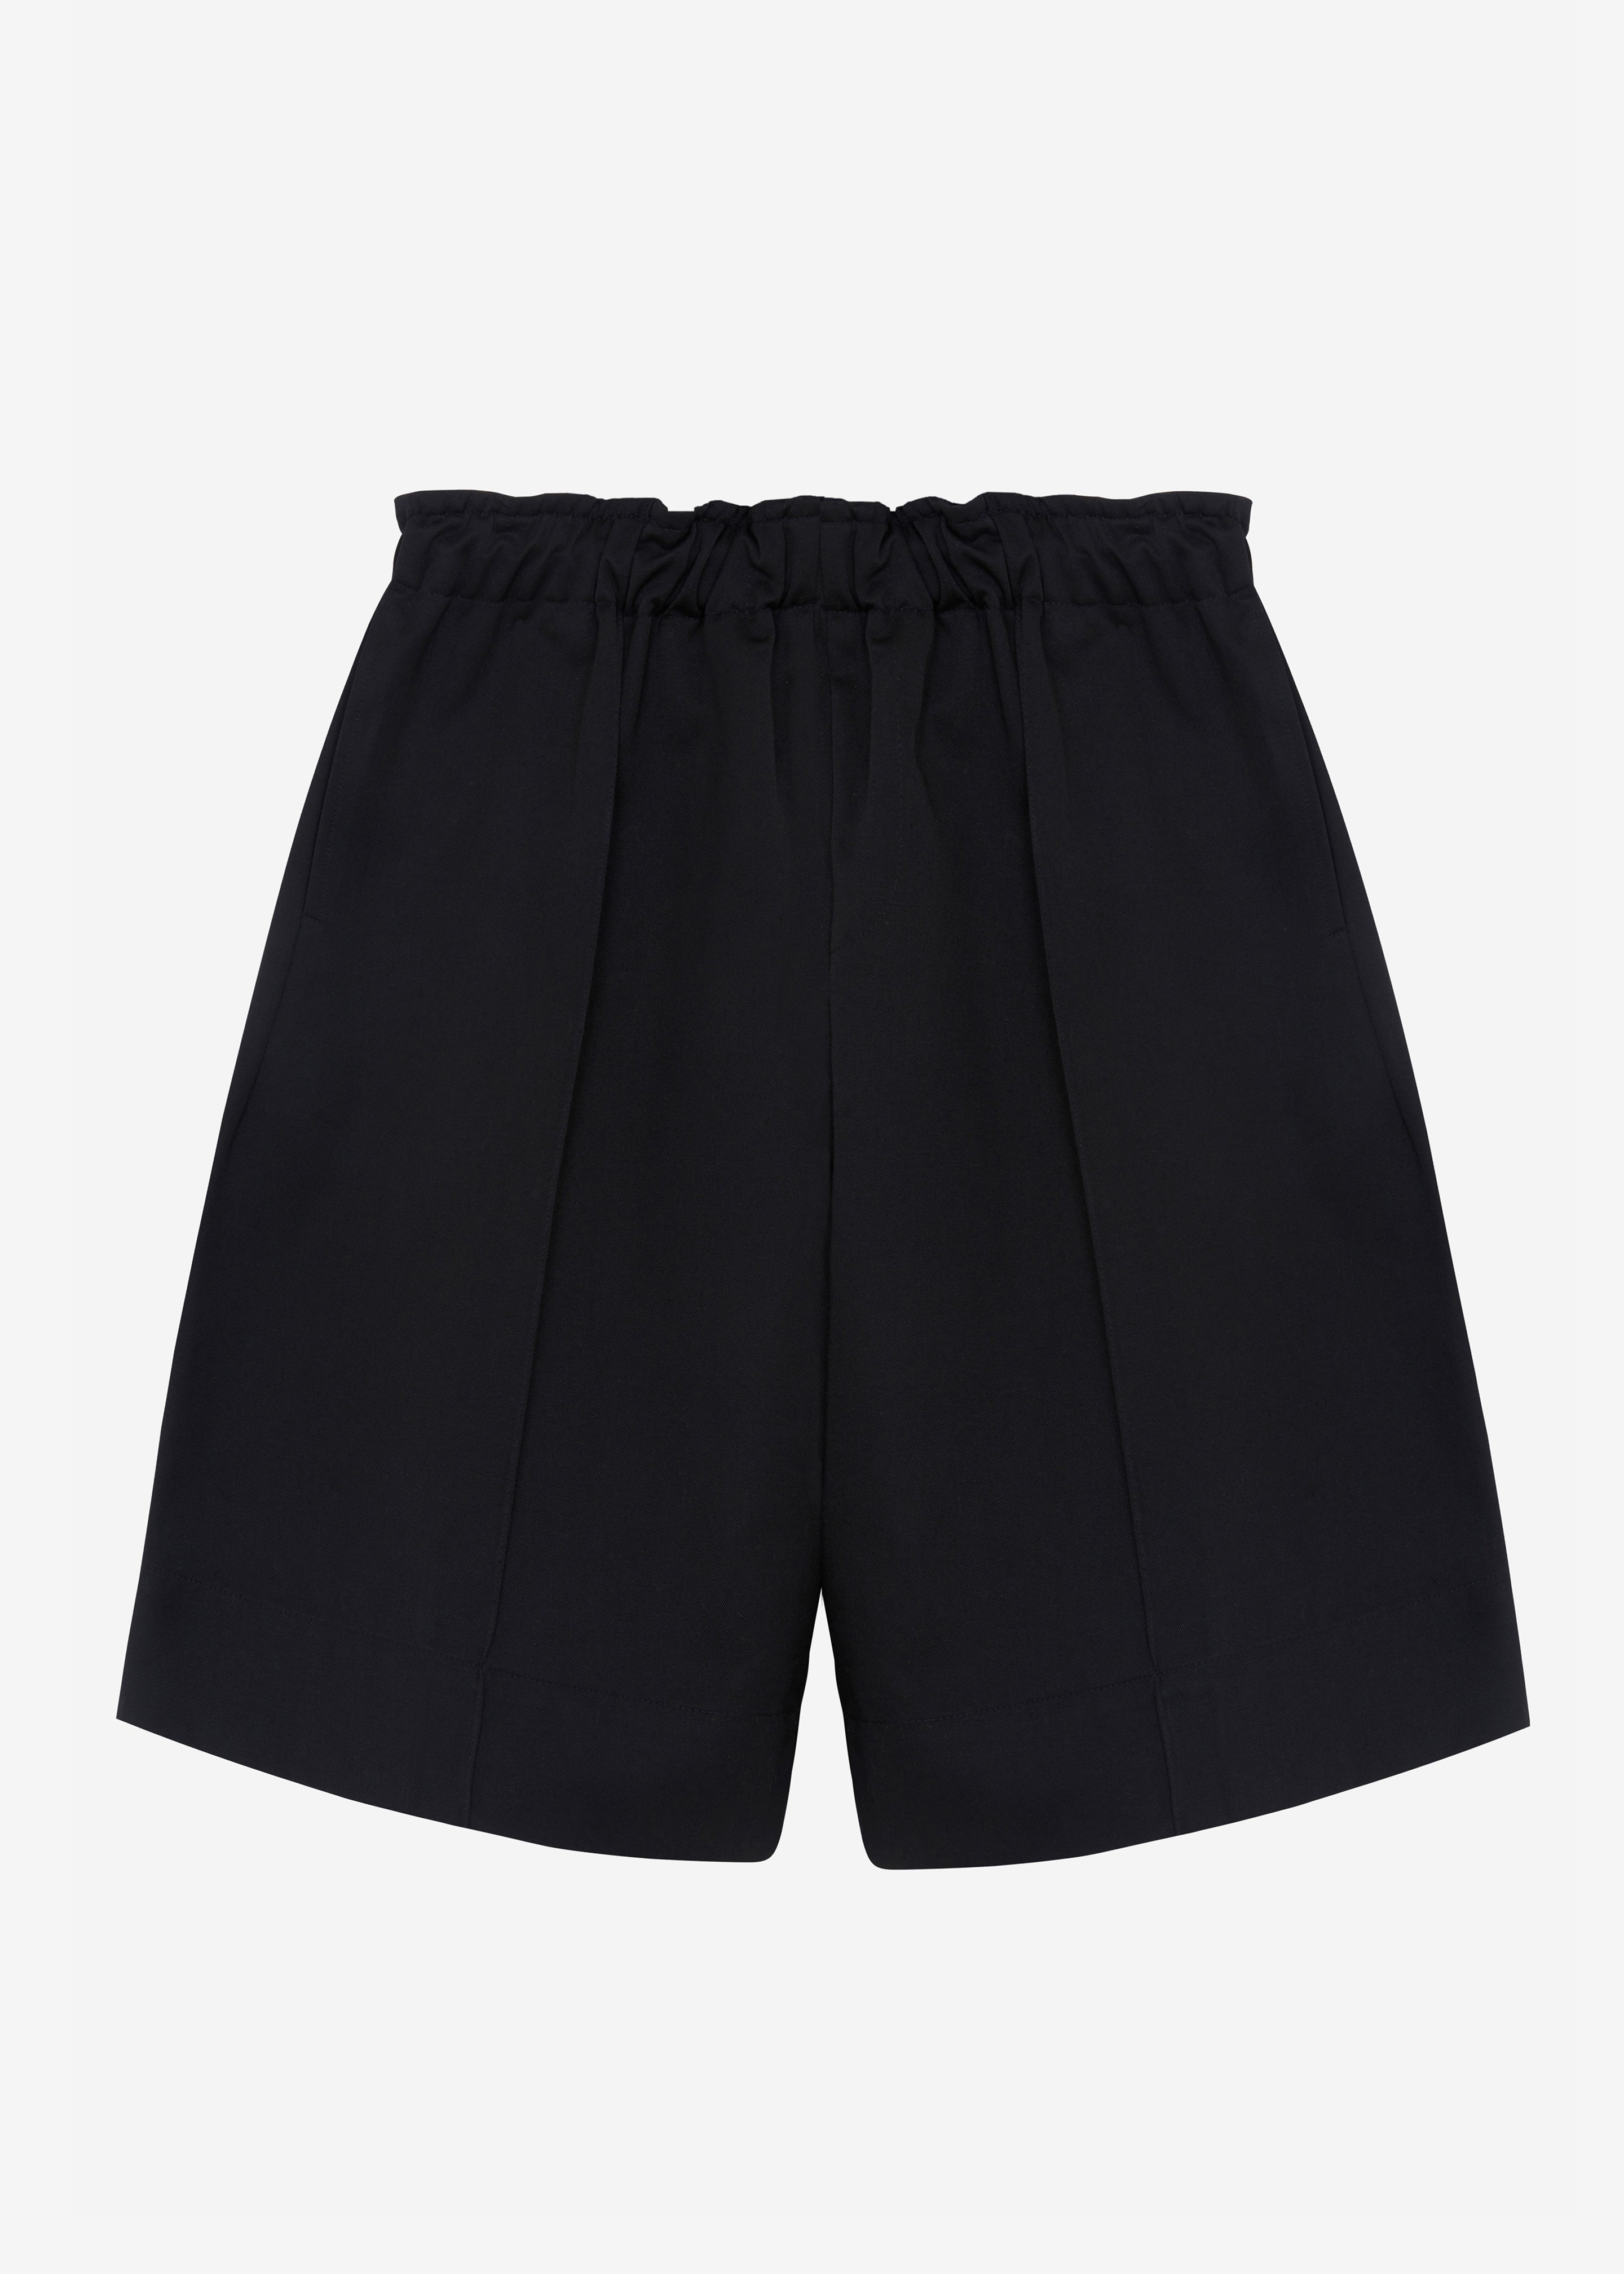 Adan Bermuda Shorts - Black - 10